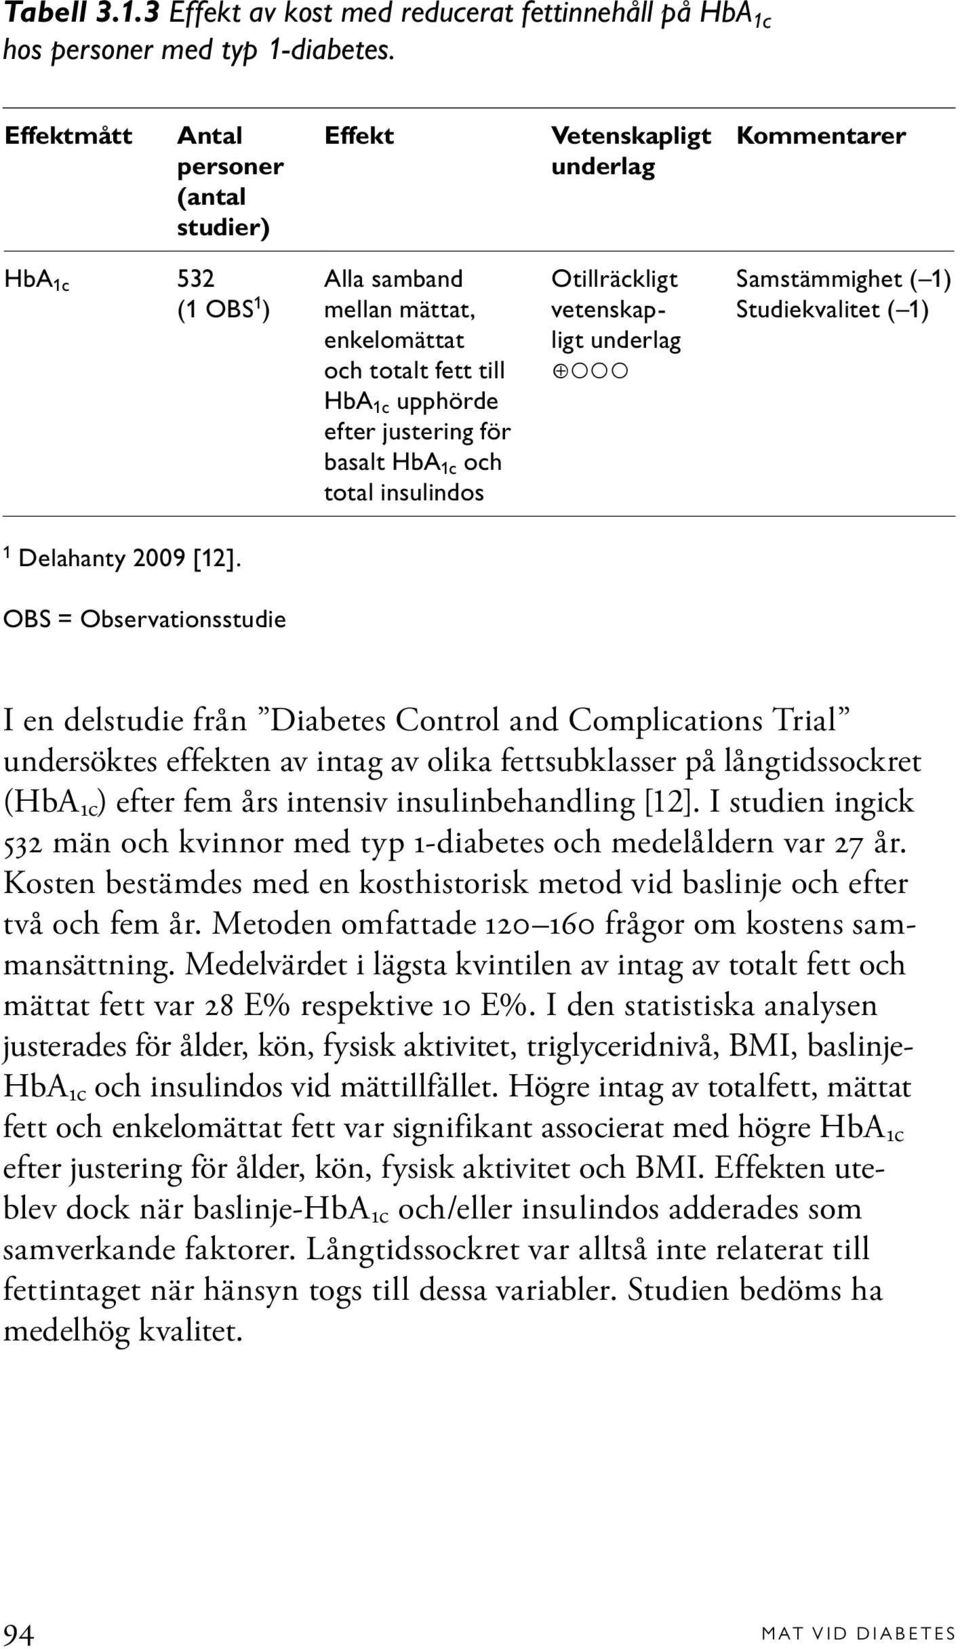 för basalt HbA 1c och total insulindos Otillräckligt vetenskapligt underlag Samstämmighet ( 1) Studiekvalitet ( 1) 1 Delahanty 2009 [12].